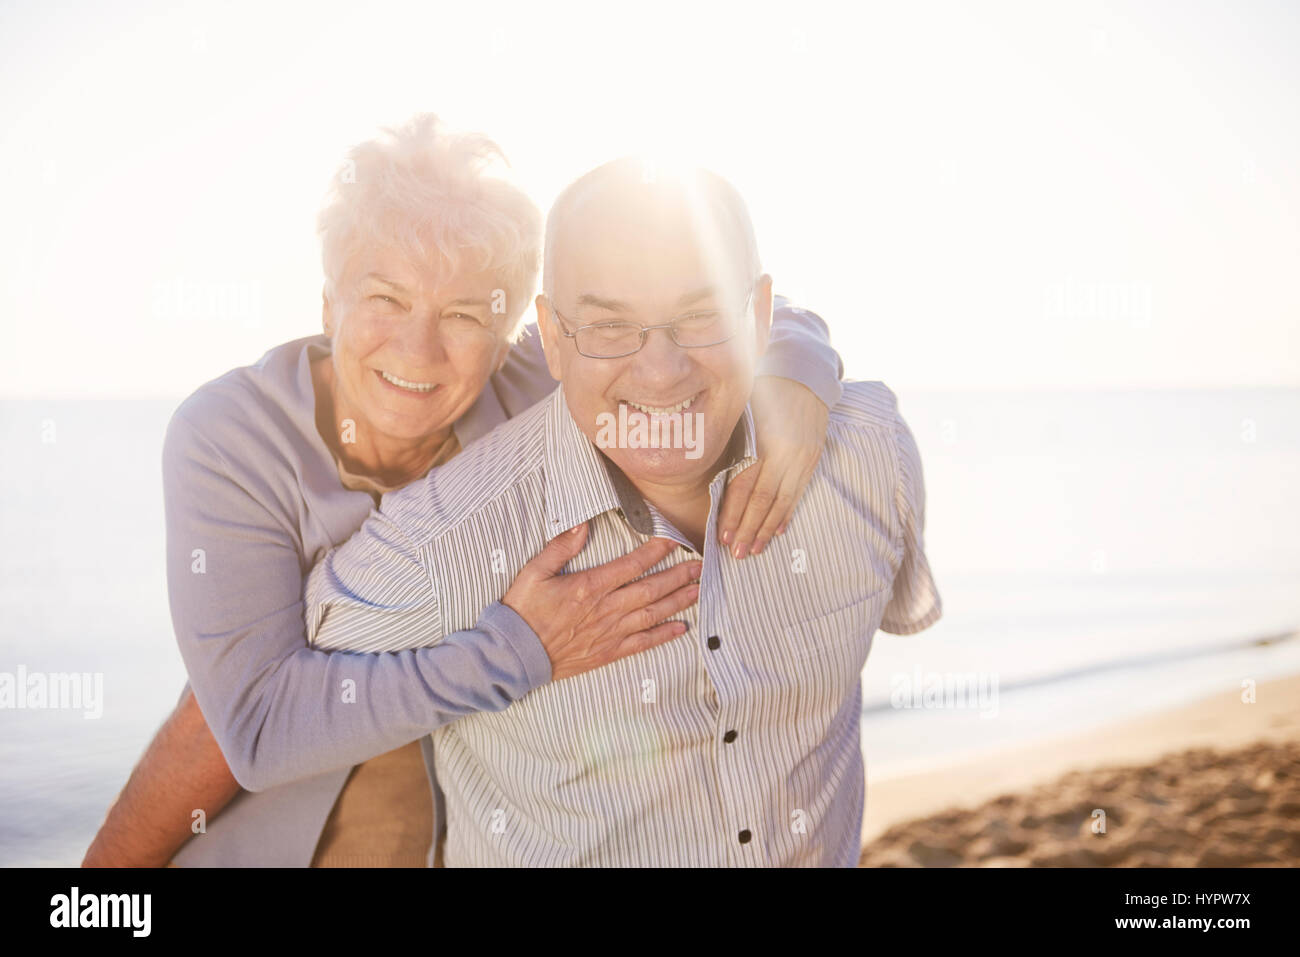 Los ancianos divirtiéndose en la playa Foto de stock